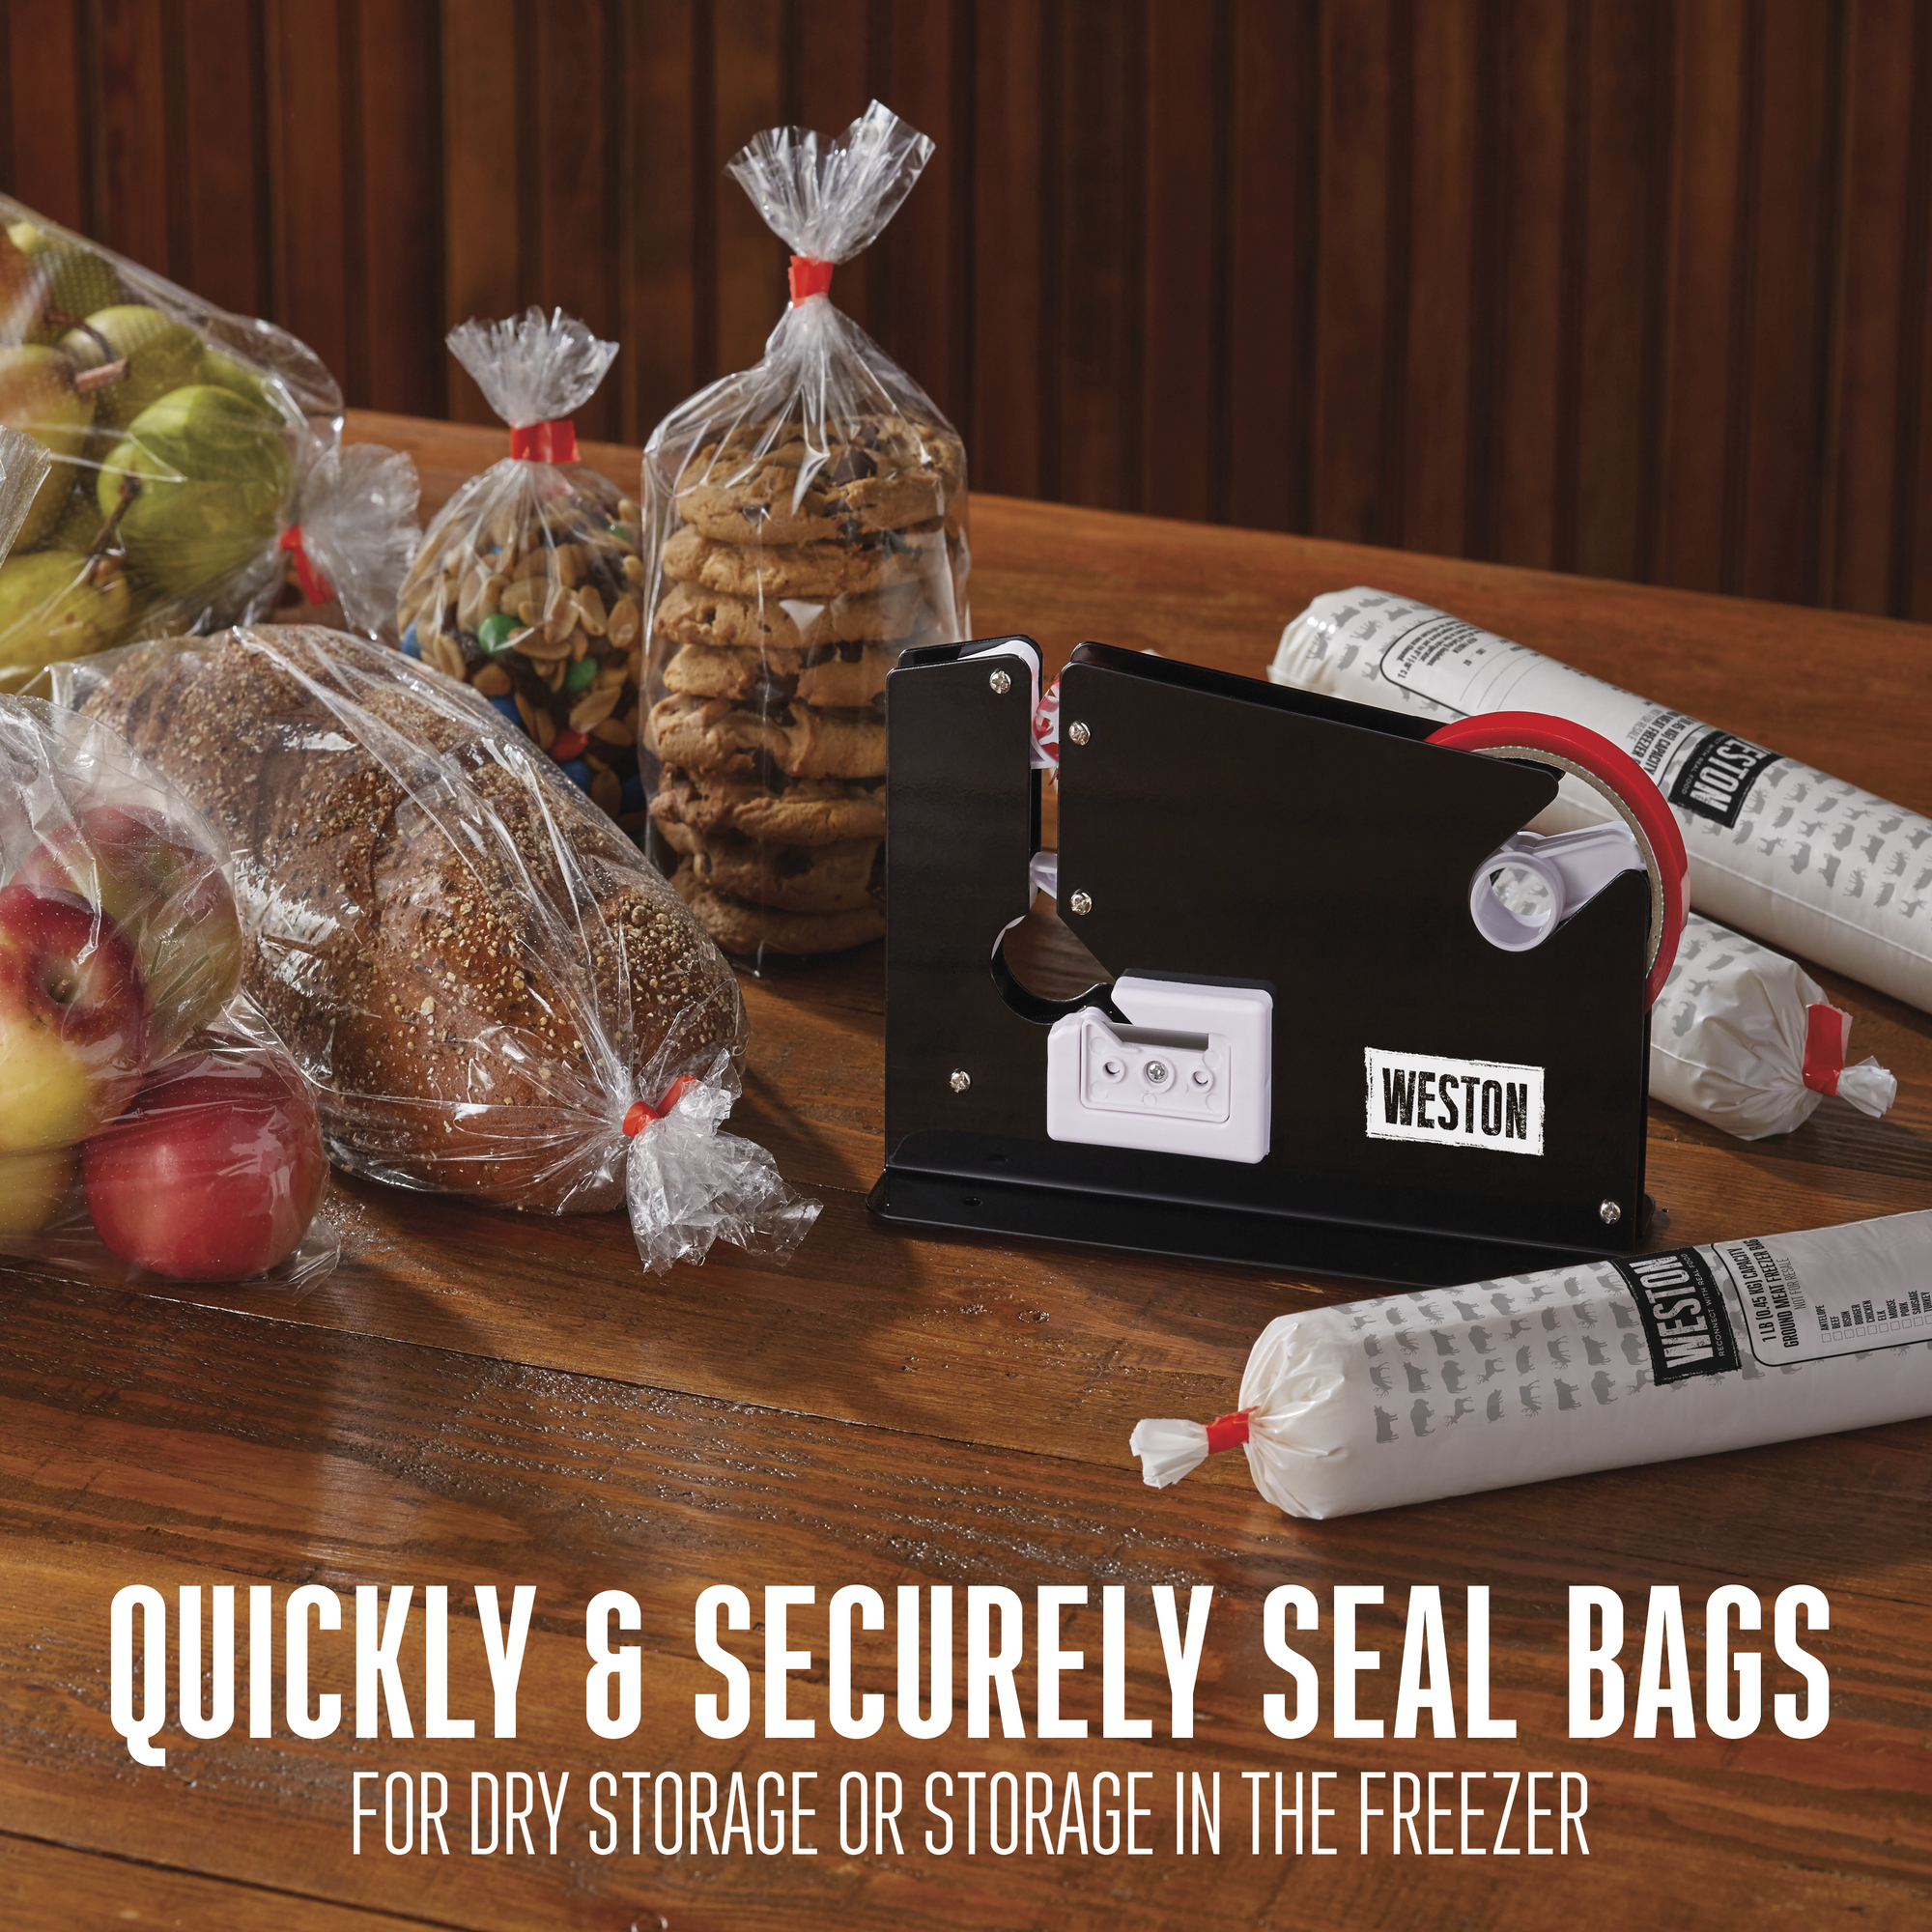 Heavy Duty Bag Neck Sealer - 07-1101-W